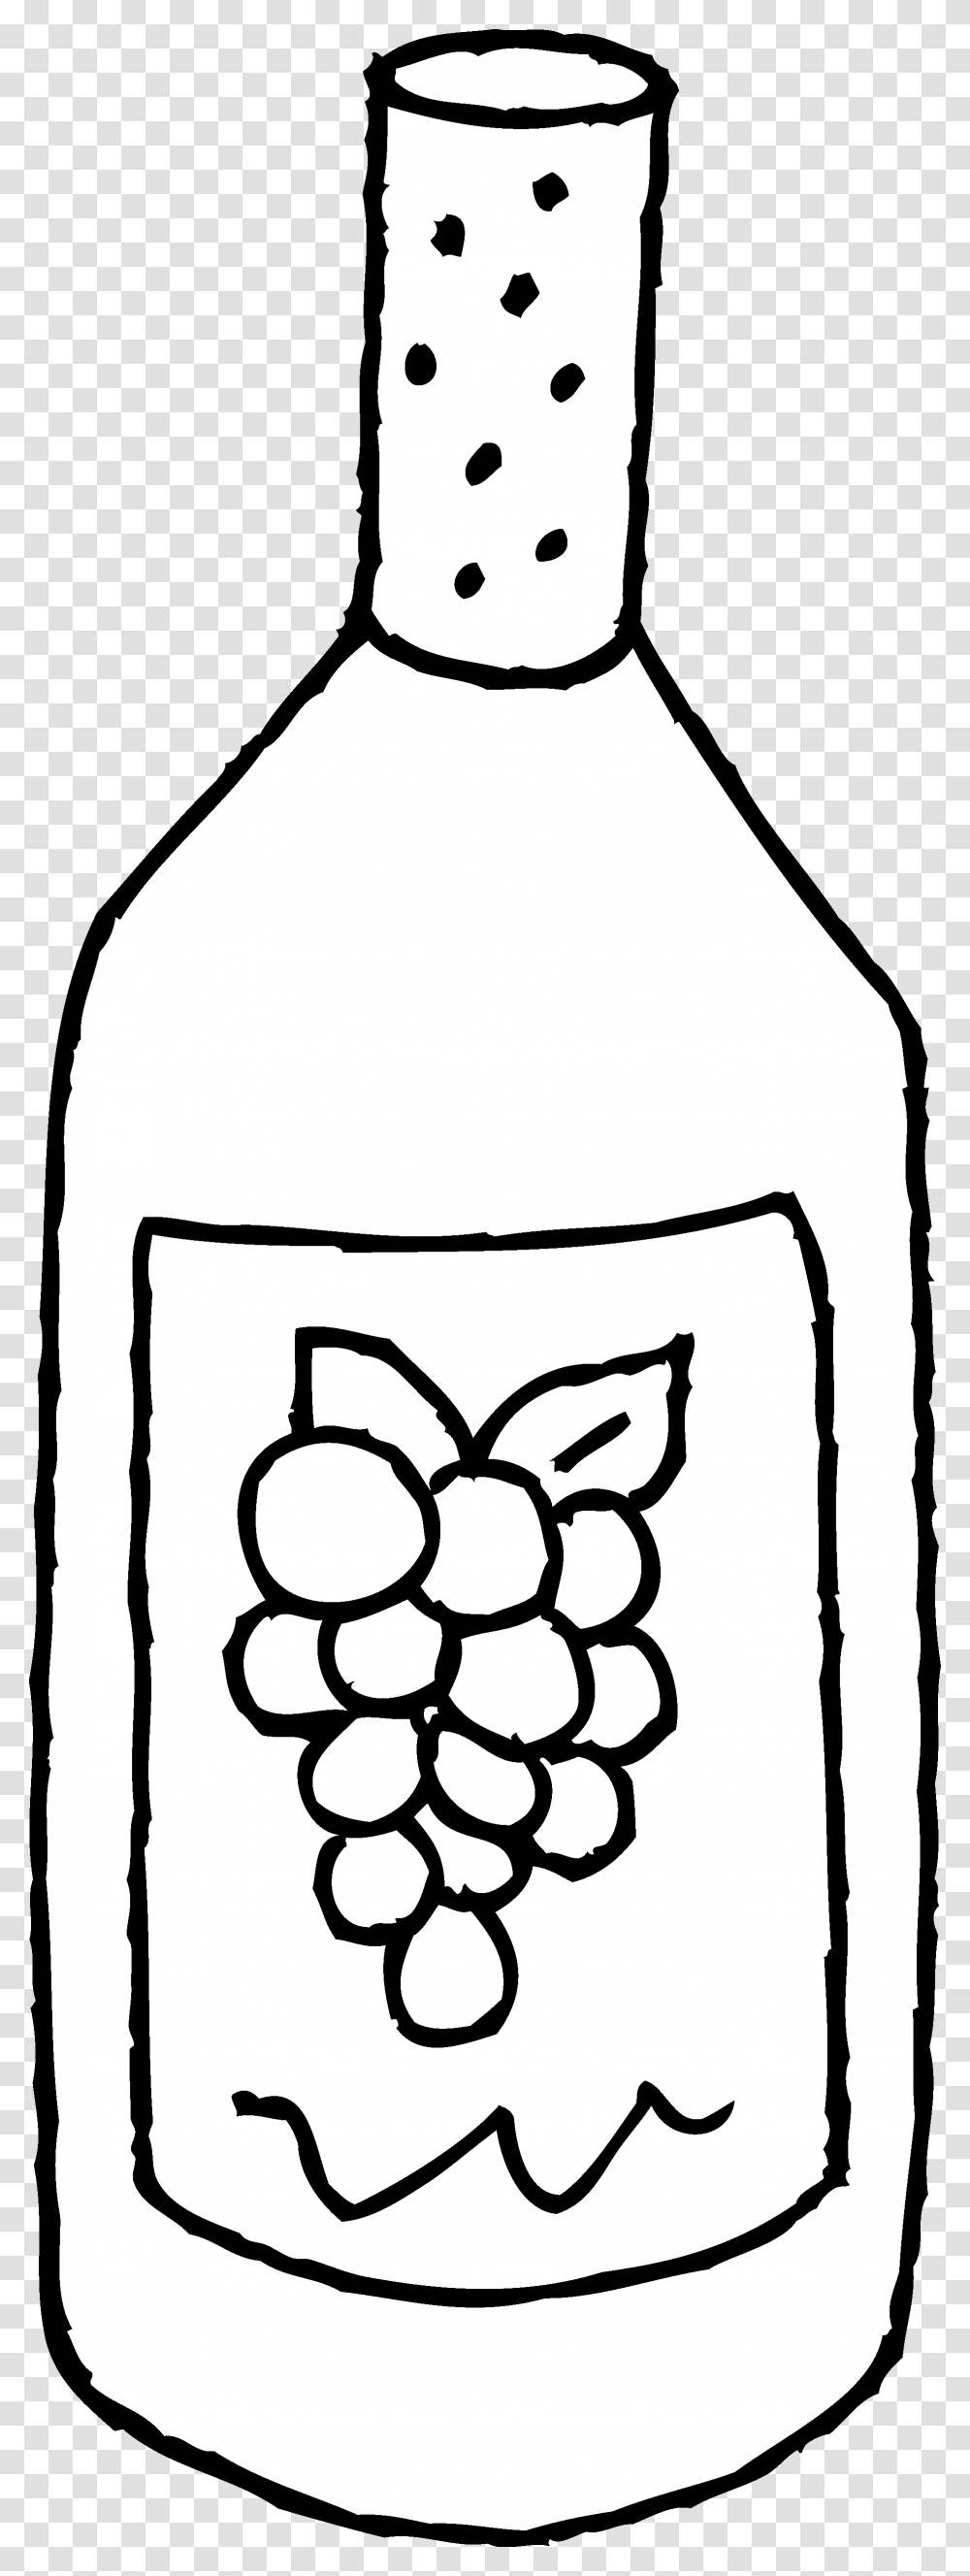 Wine Bottle Bottle Of Wine Line Art Free Clip Clipart Bottle Of Wine Clipart Black And White, Stencil, Beverage, Drink, Bag Transparent Png